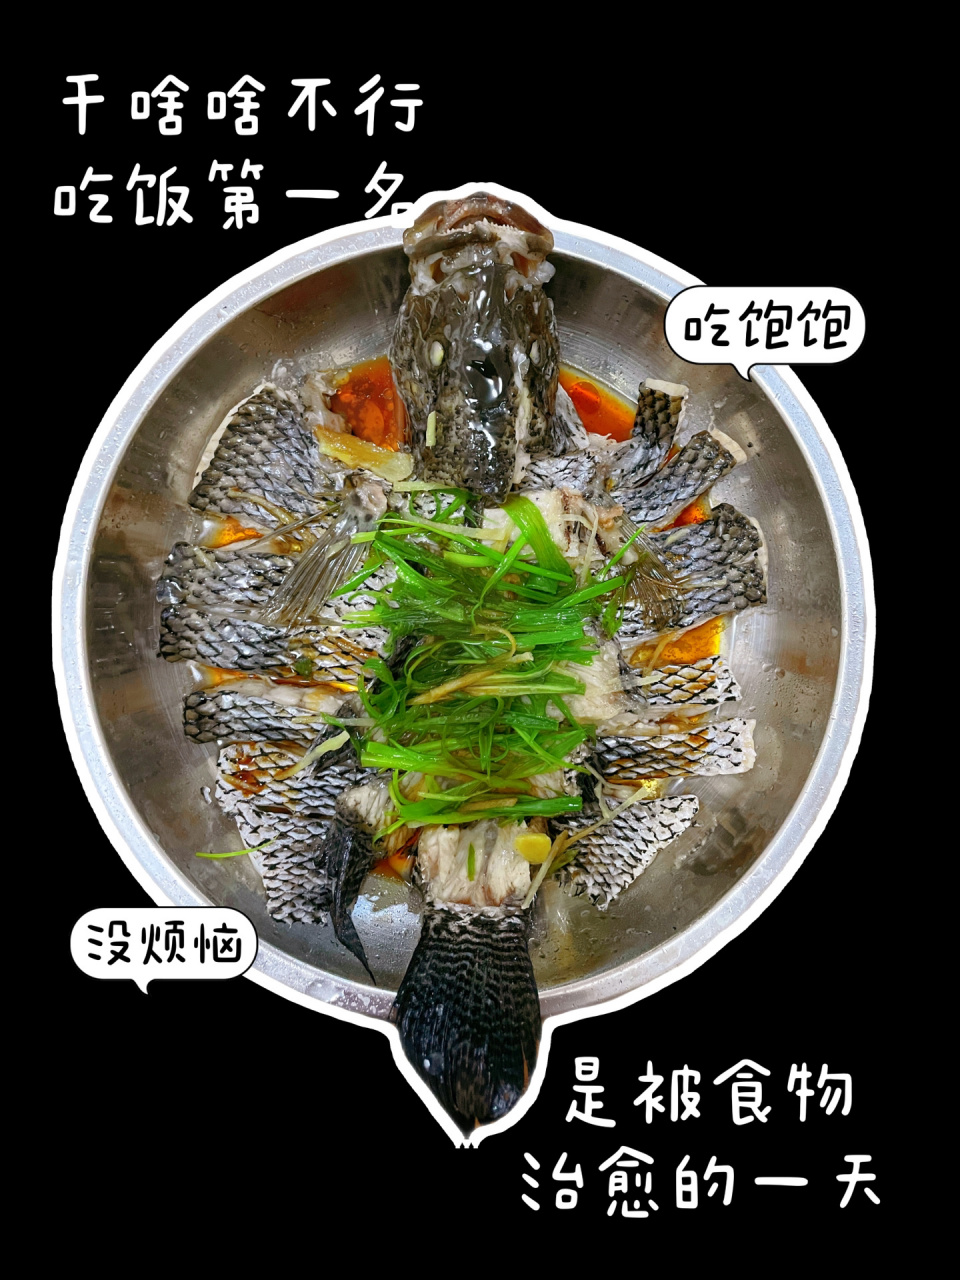 红烧裸斑鱼的四川做法图片